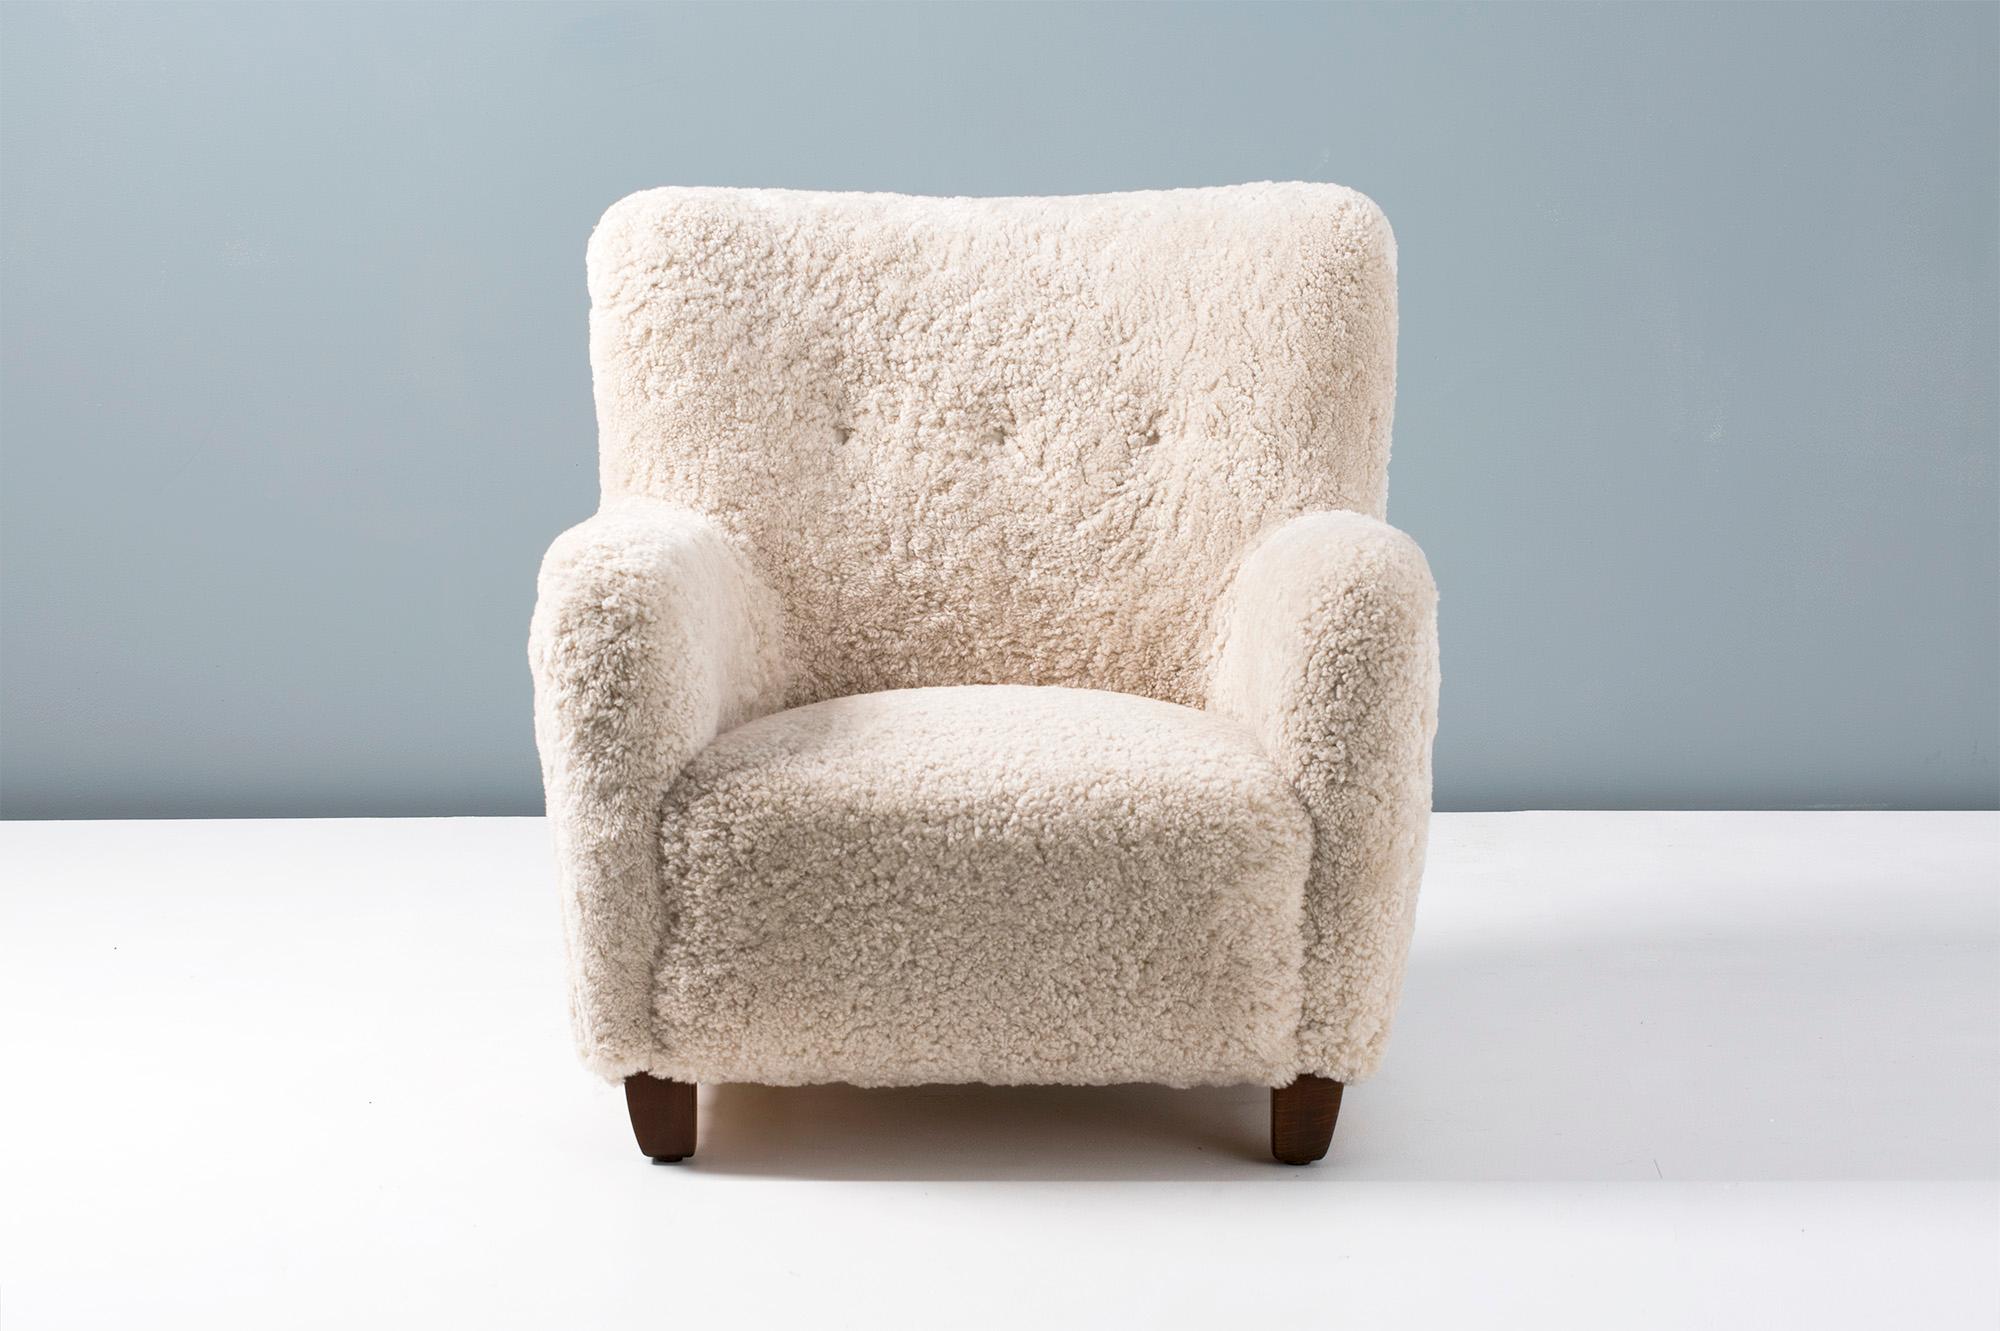 Der Schafsfell-Sessel wurde 1939 vom dänischen Architekten Jens Houmoller Klemmensen entworfen. 

Diese hochwertige Reproduktion wird auf Bestellung in unseren Werkstätten in England unter Lizenz des Klemmensen-Nachlasses handgefertigt. Die